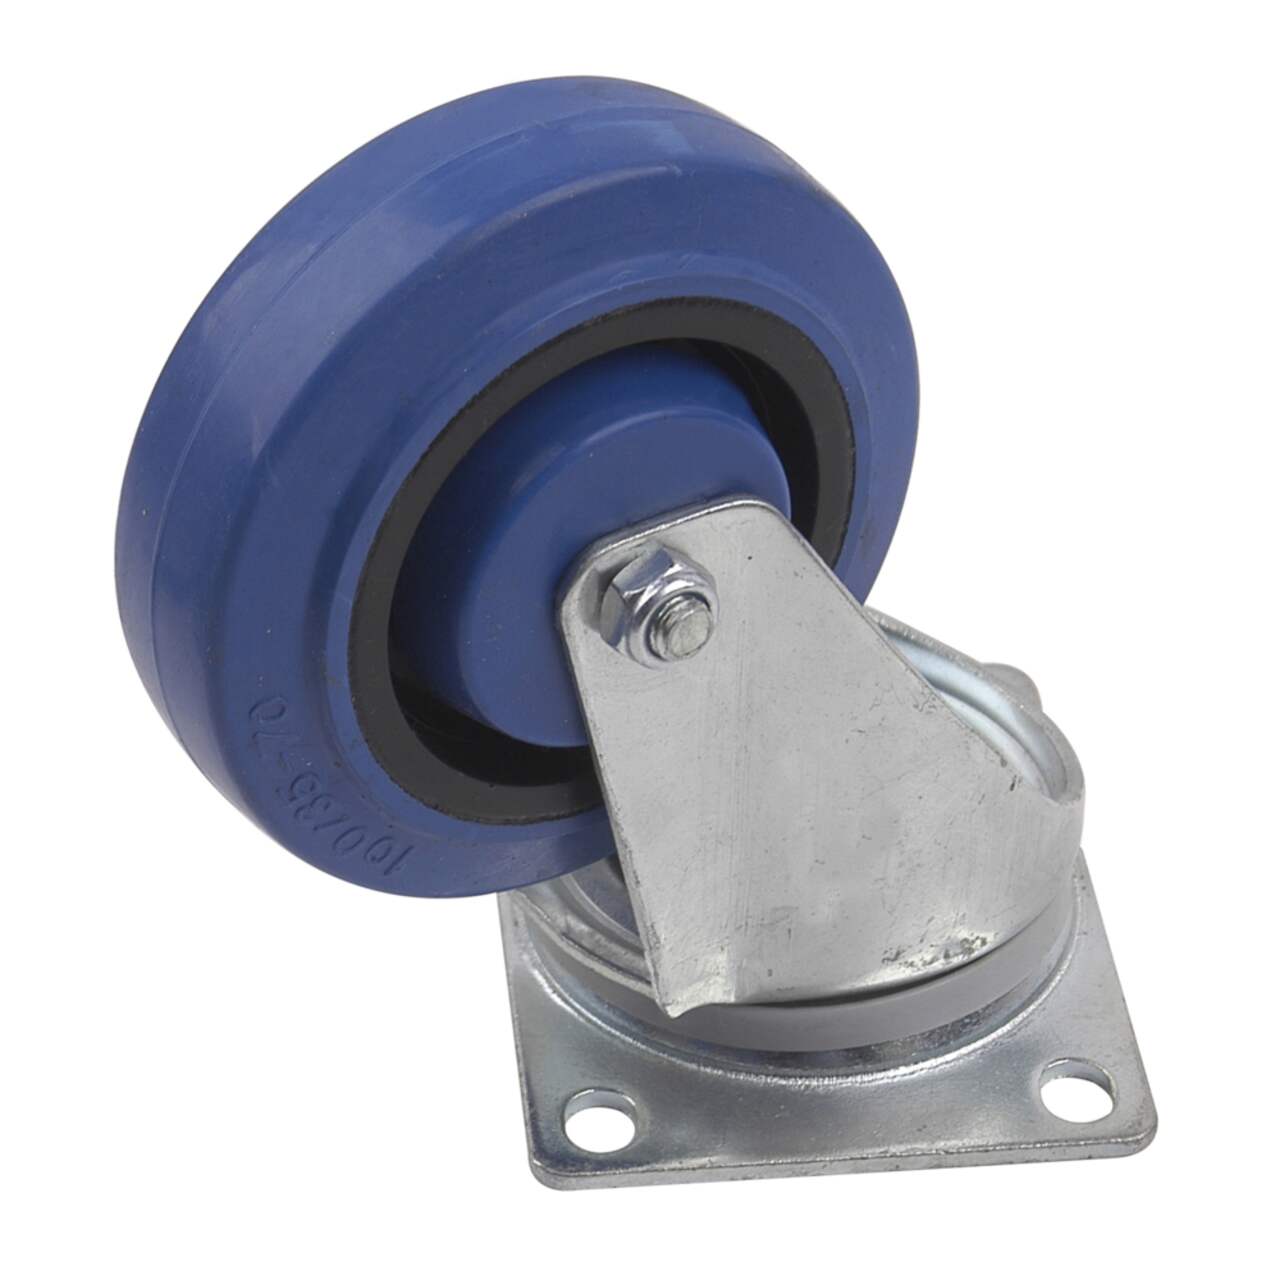 Everbilt Roulette de plaque pivotante en caoutchouc élastique bleu